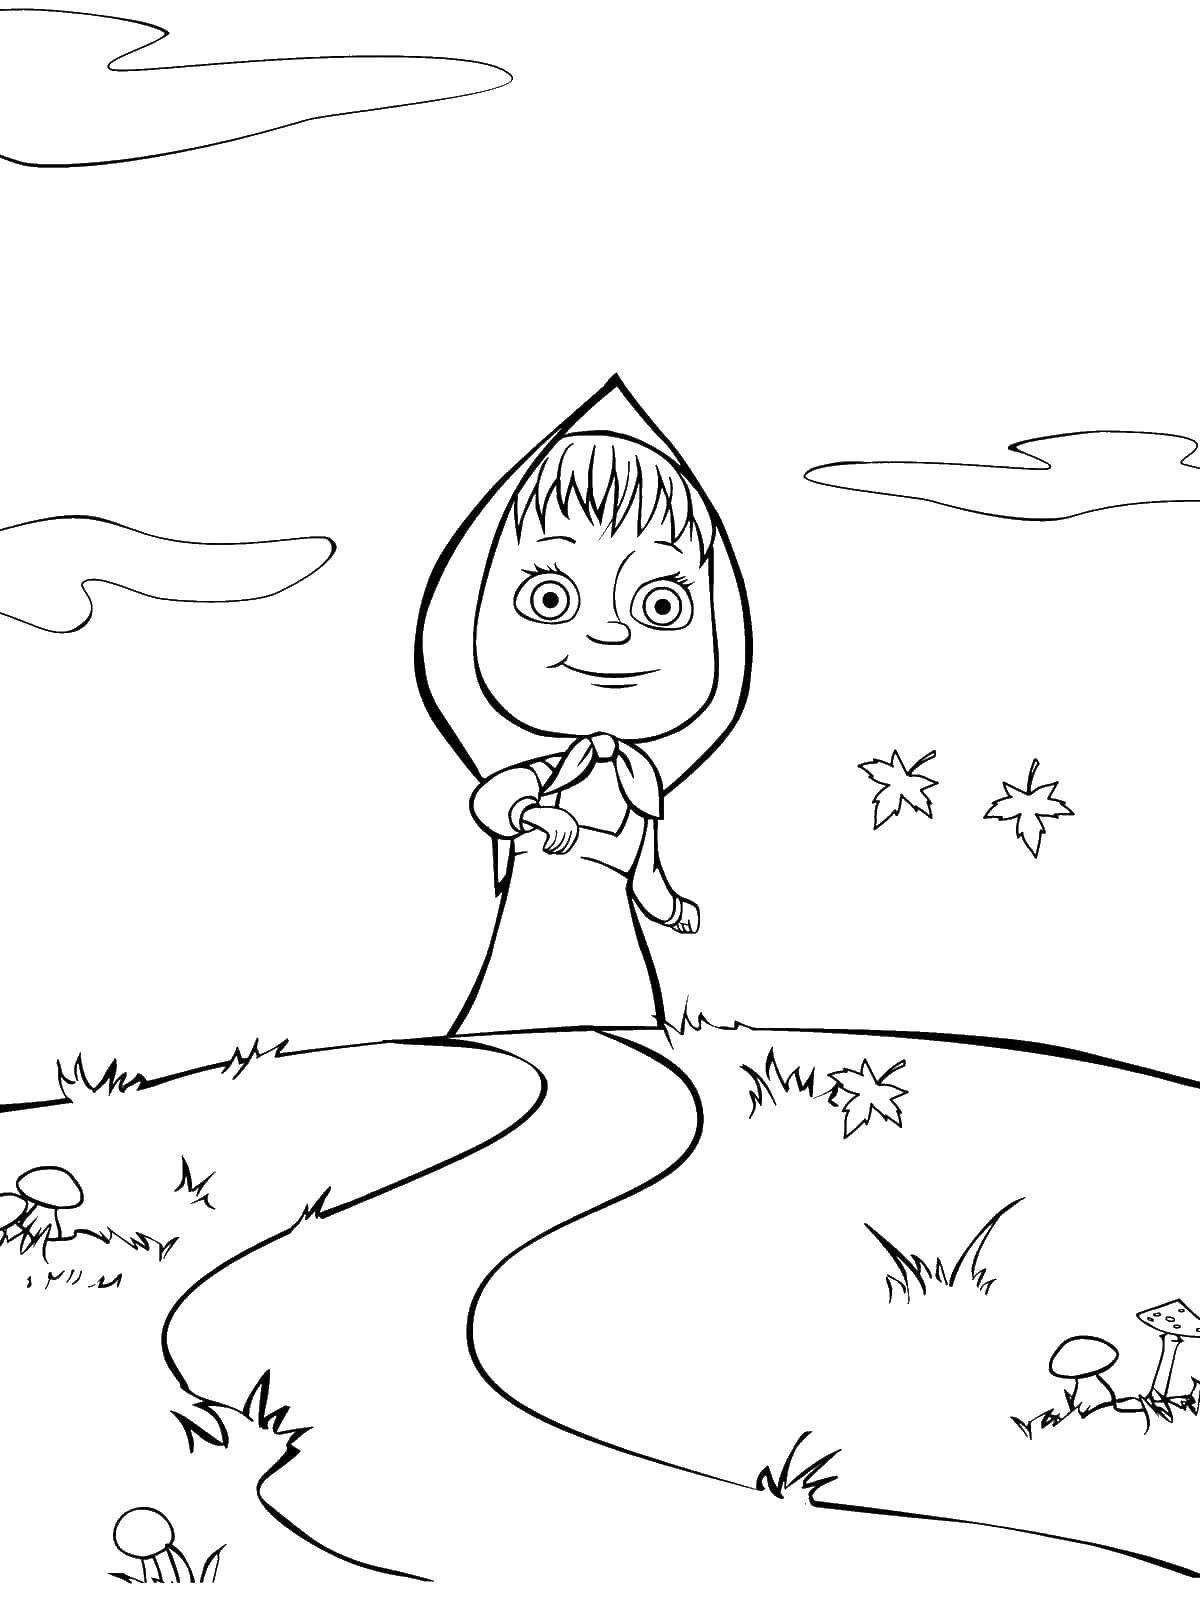 Раскраски для детей про озорную Машу из мультфильма Маша и медведь  Маша идет по полю